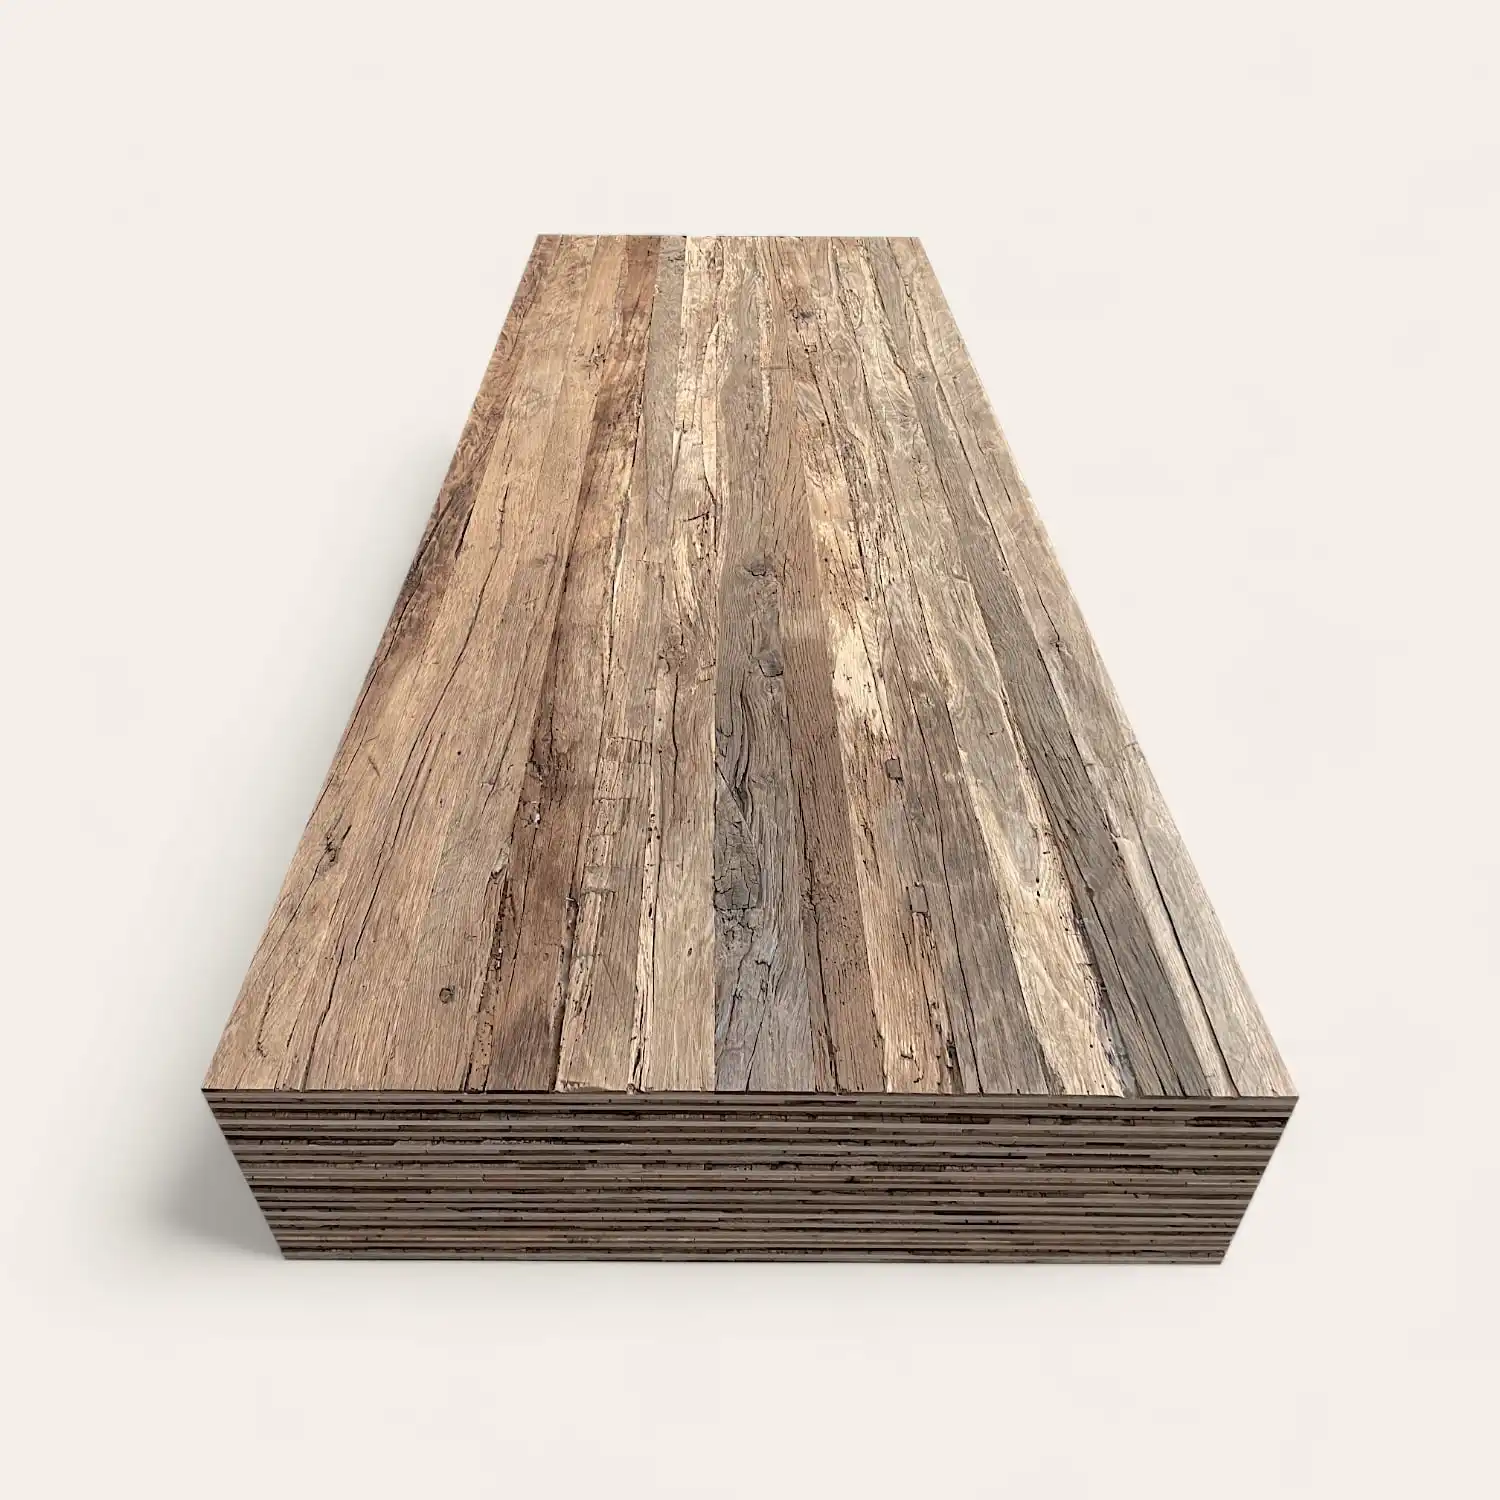  Une pile de planches de bois patinées disposées en une pile soignée, vue sous un angle diagonal sur un fond blanc. 